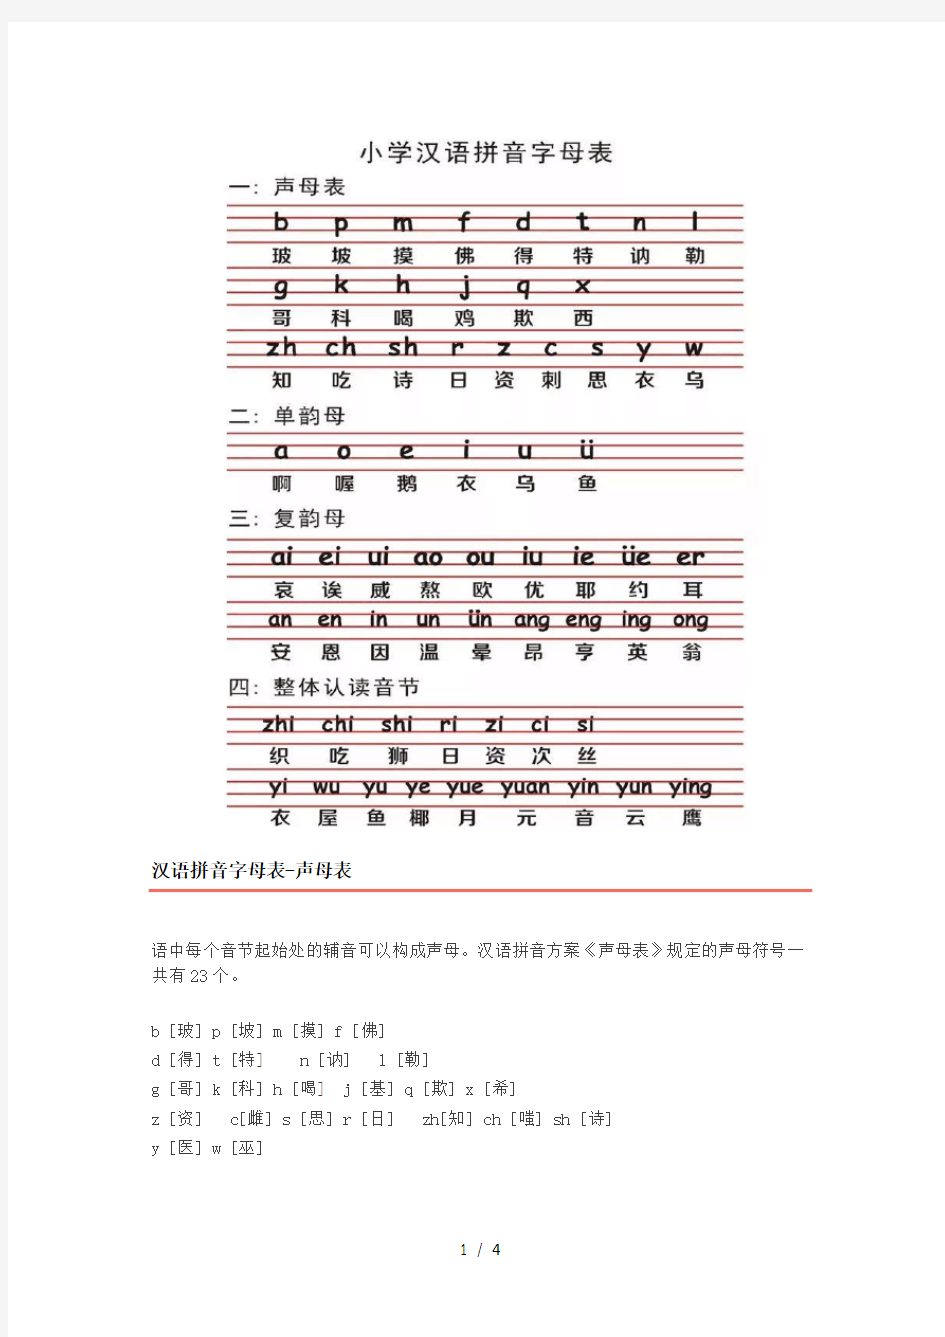 最新小学语文26个汉语拼音字母表读法及学习要点!